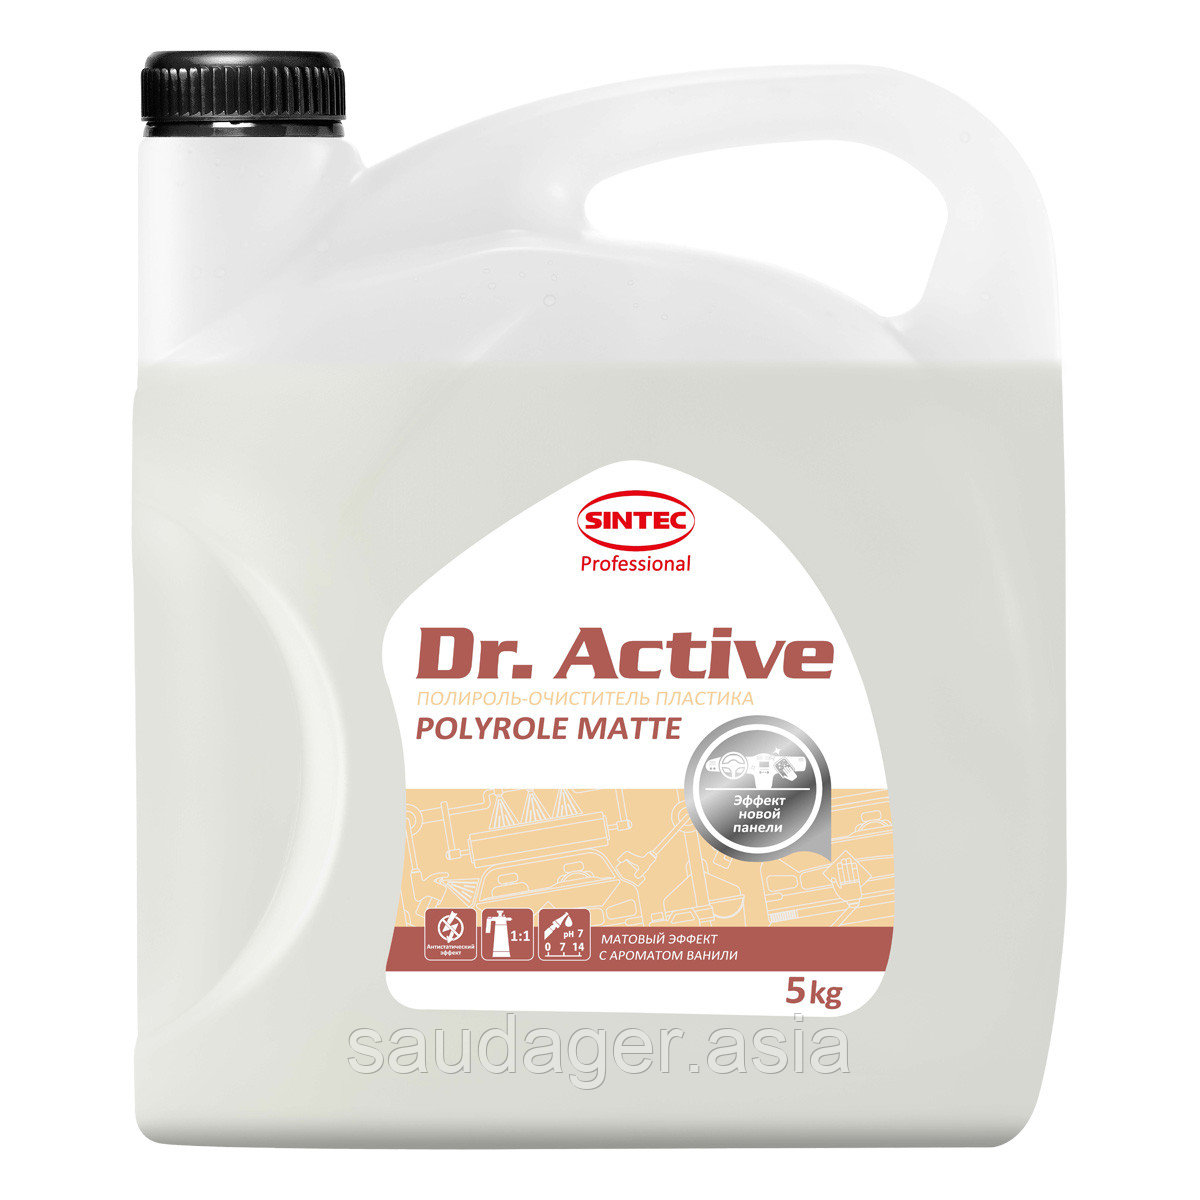 Sintec Dr. Active Полироль-очиститель пластика "Polyrole Matte" ваниль (5 кг)